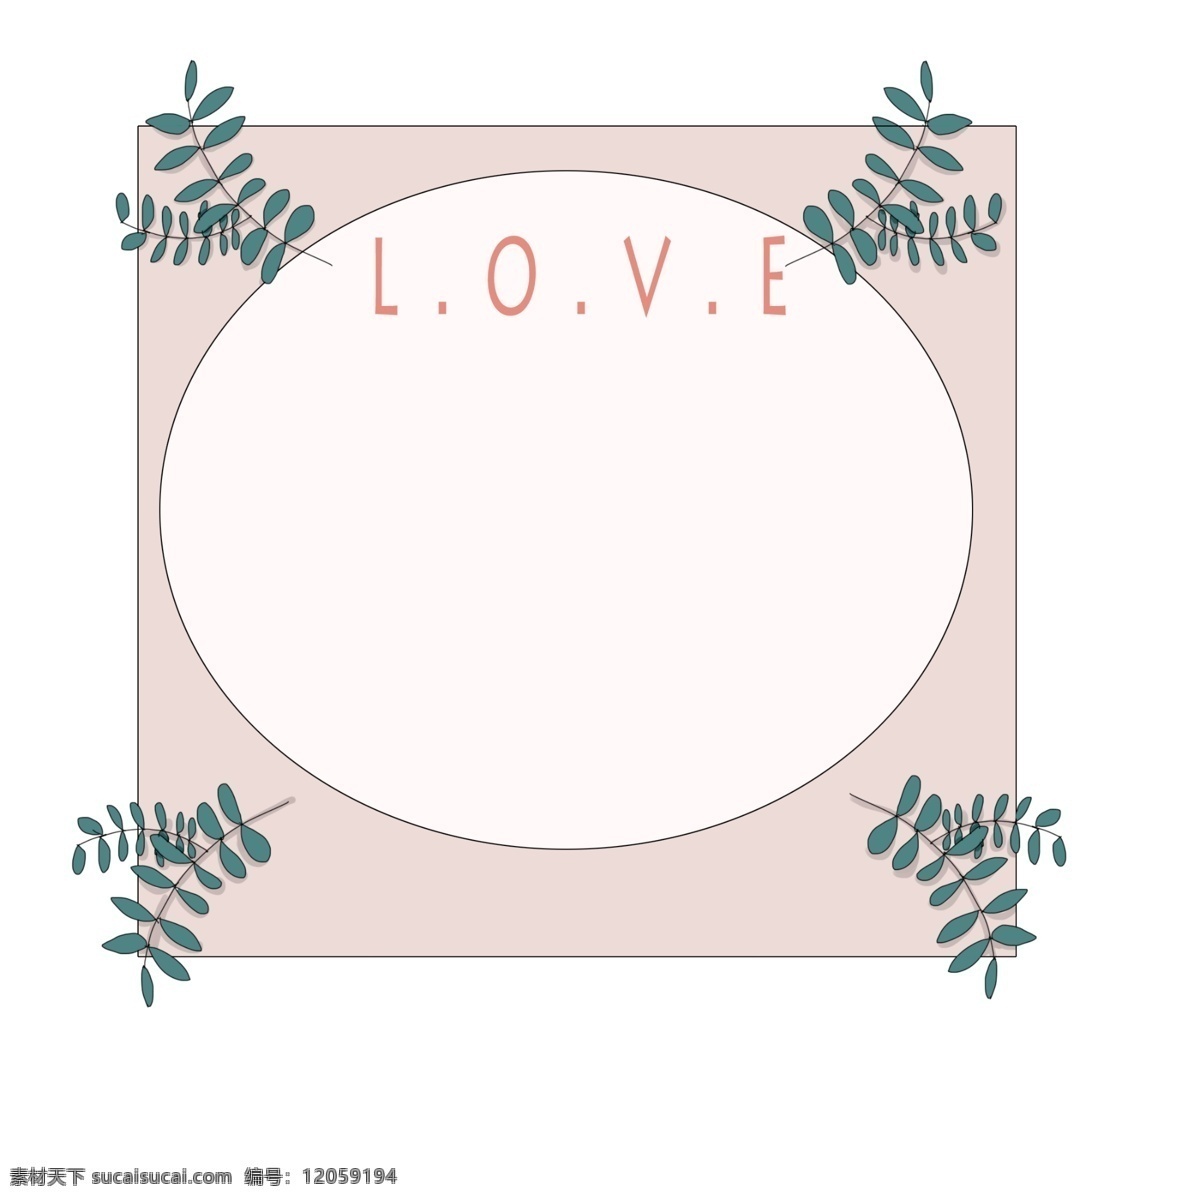 情人节 爱情 边框 插画 植物爱情边框 漂亮 手绘爱情边框 绿色的叶子 可爱